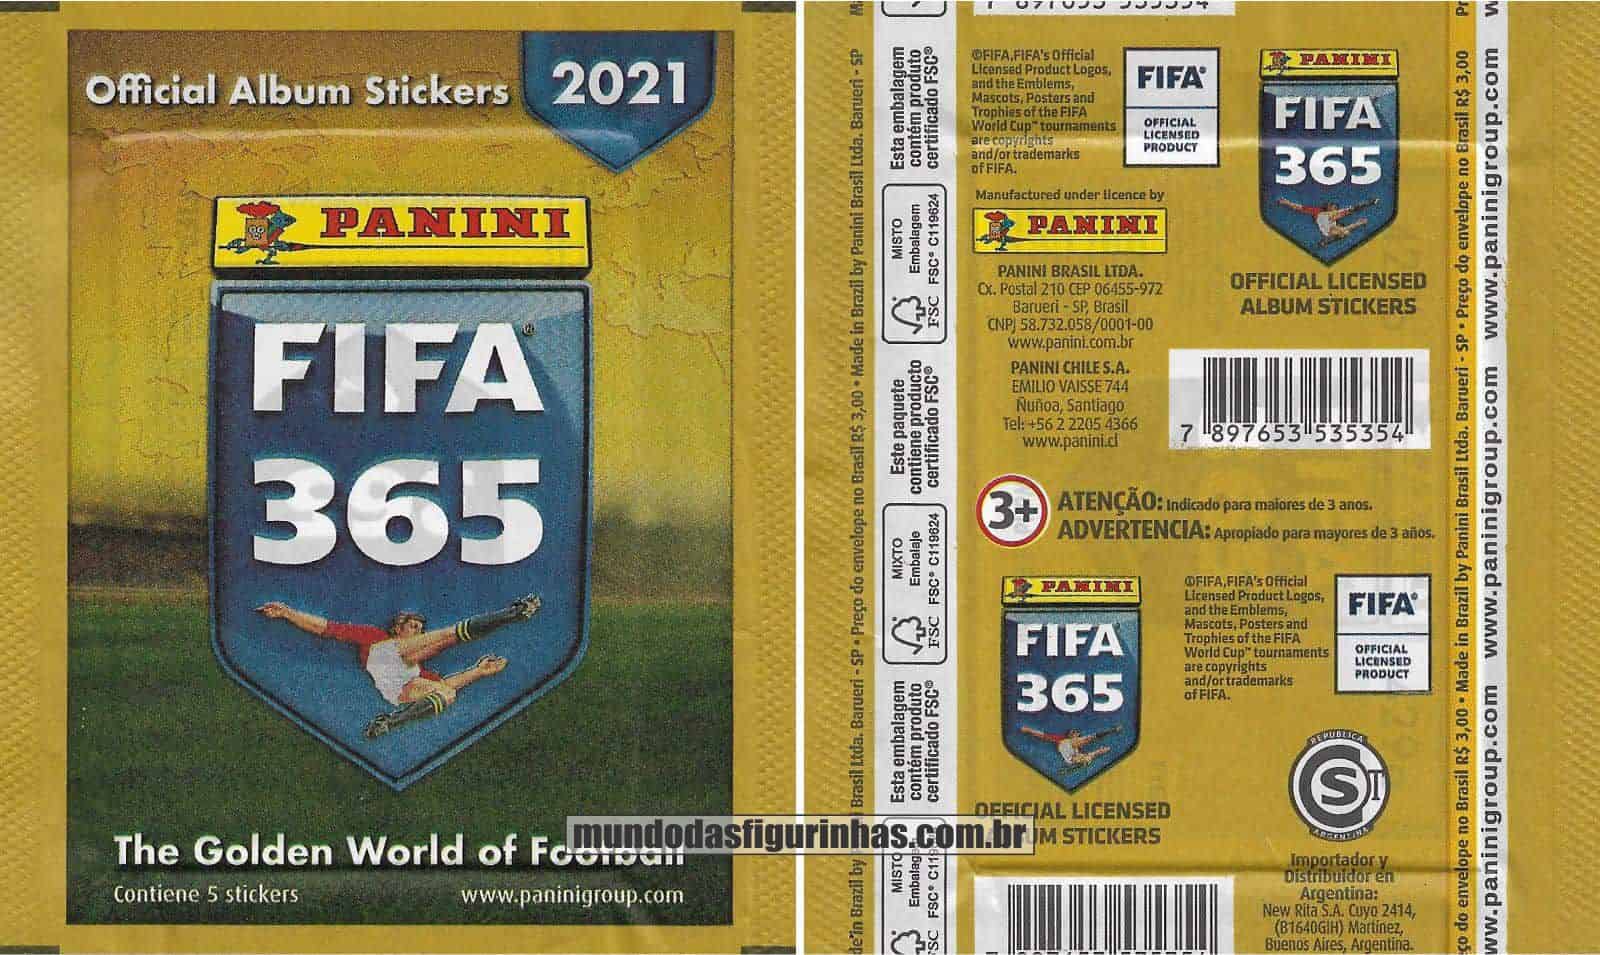 Pacotinho Fifa 365 2021 com a frase “Contiene 5 Stickers”.